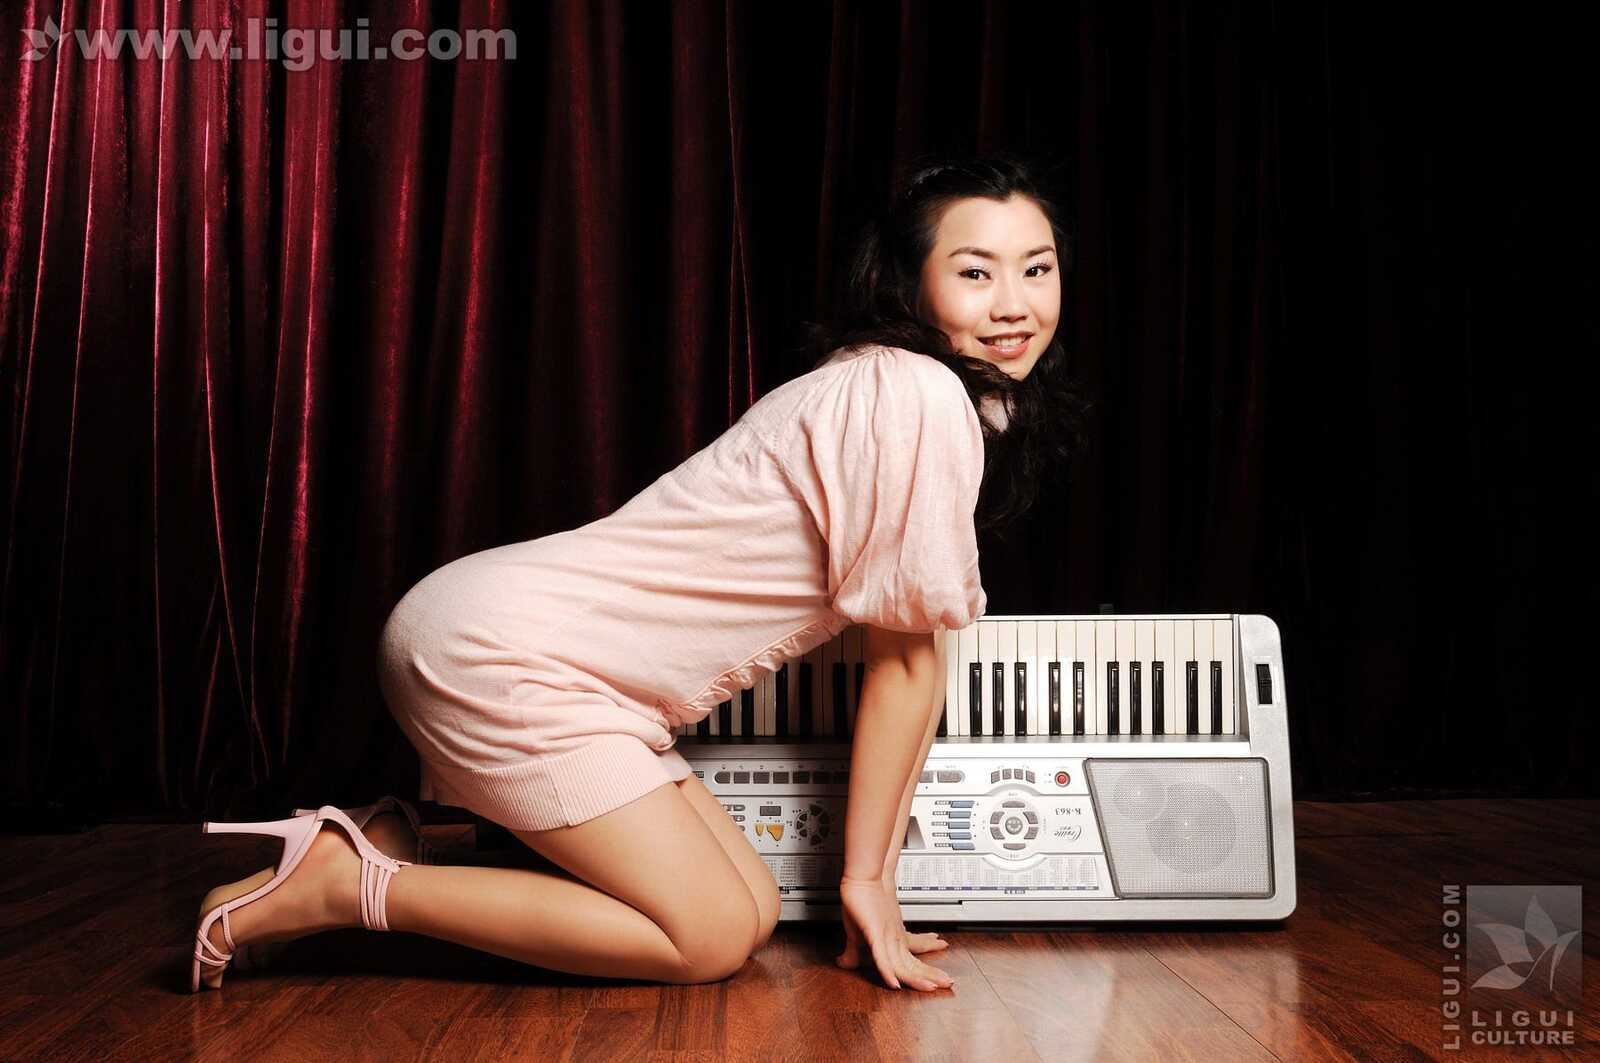 Model 由美《音乐私家教师的性感肉丝》 丽柜Li